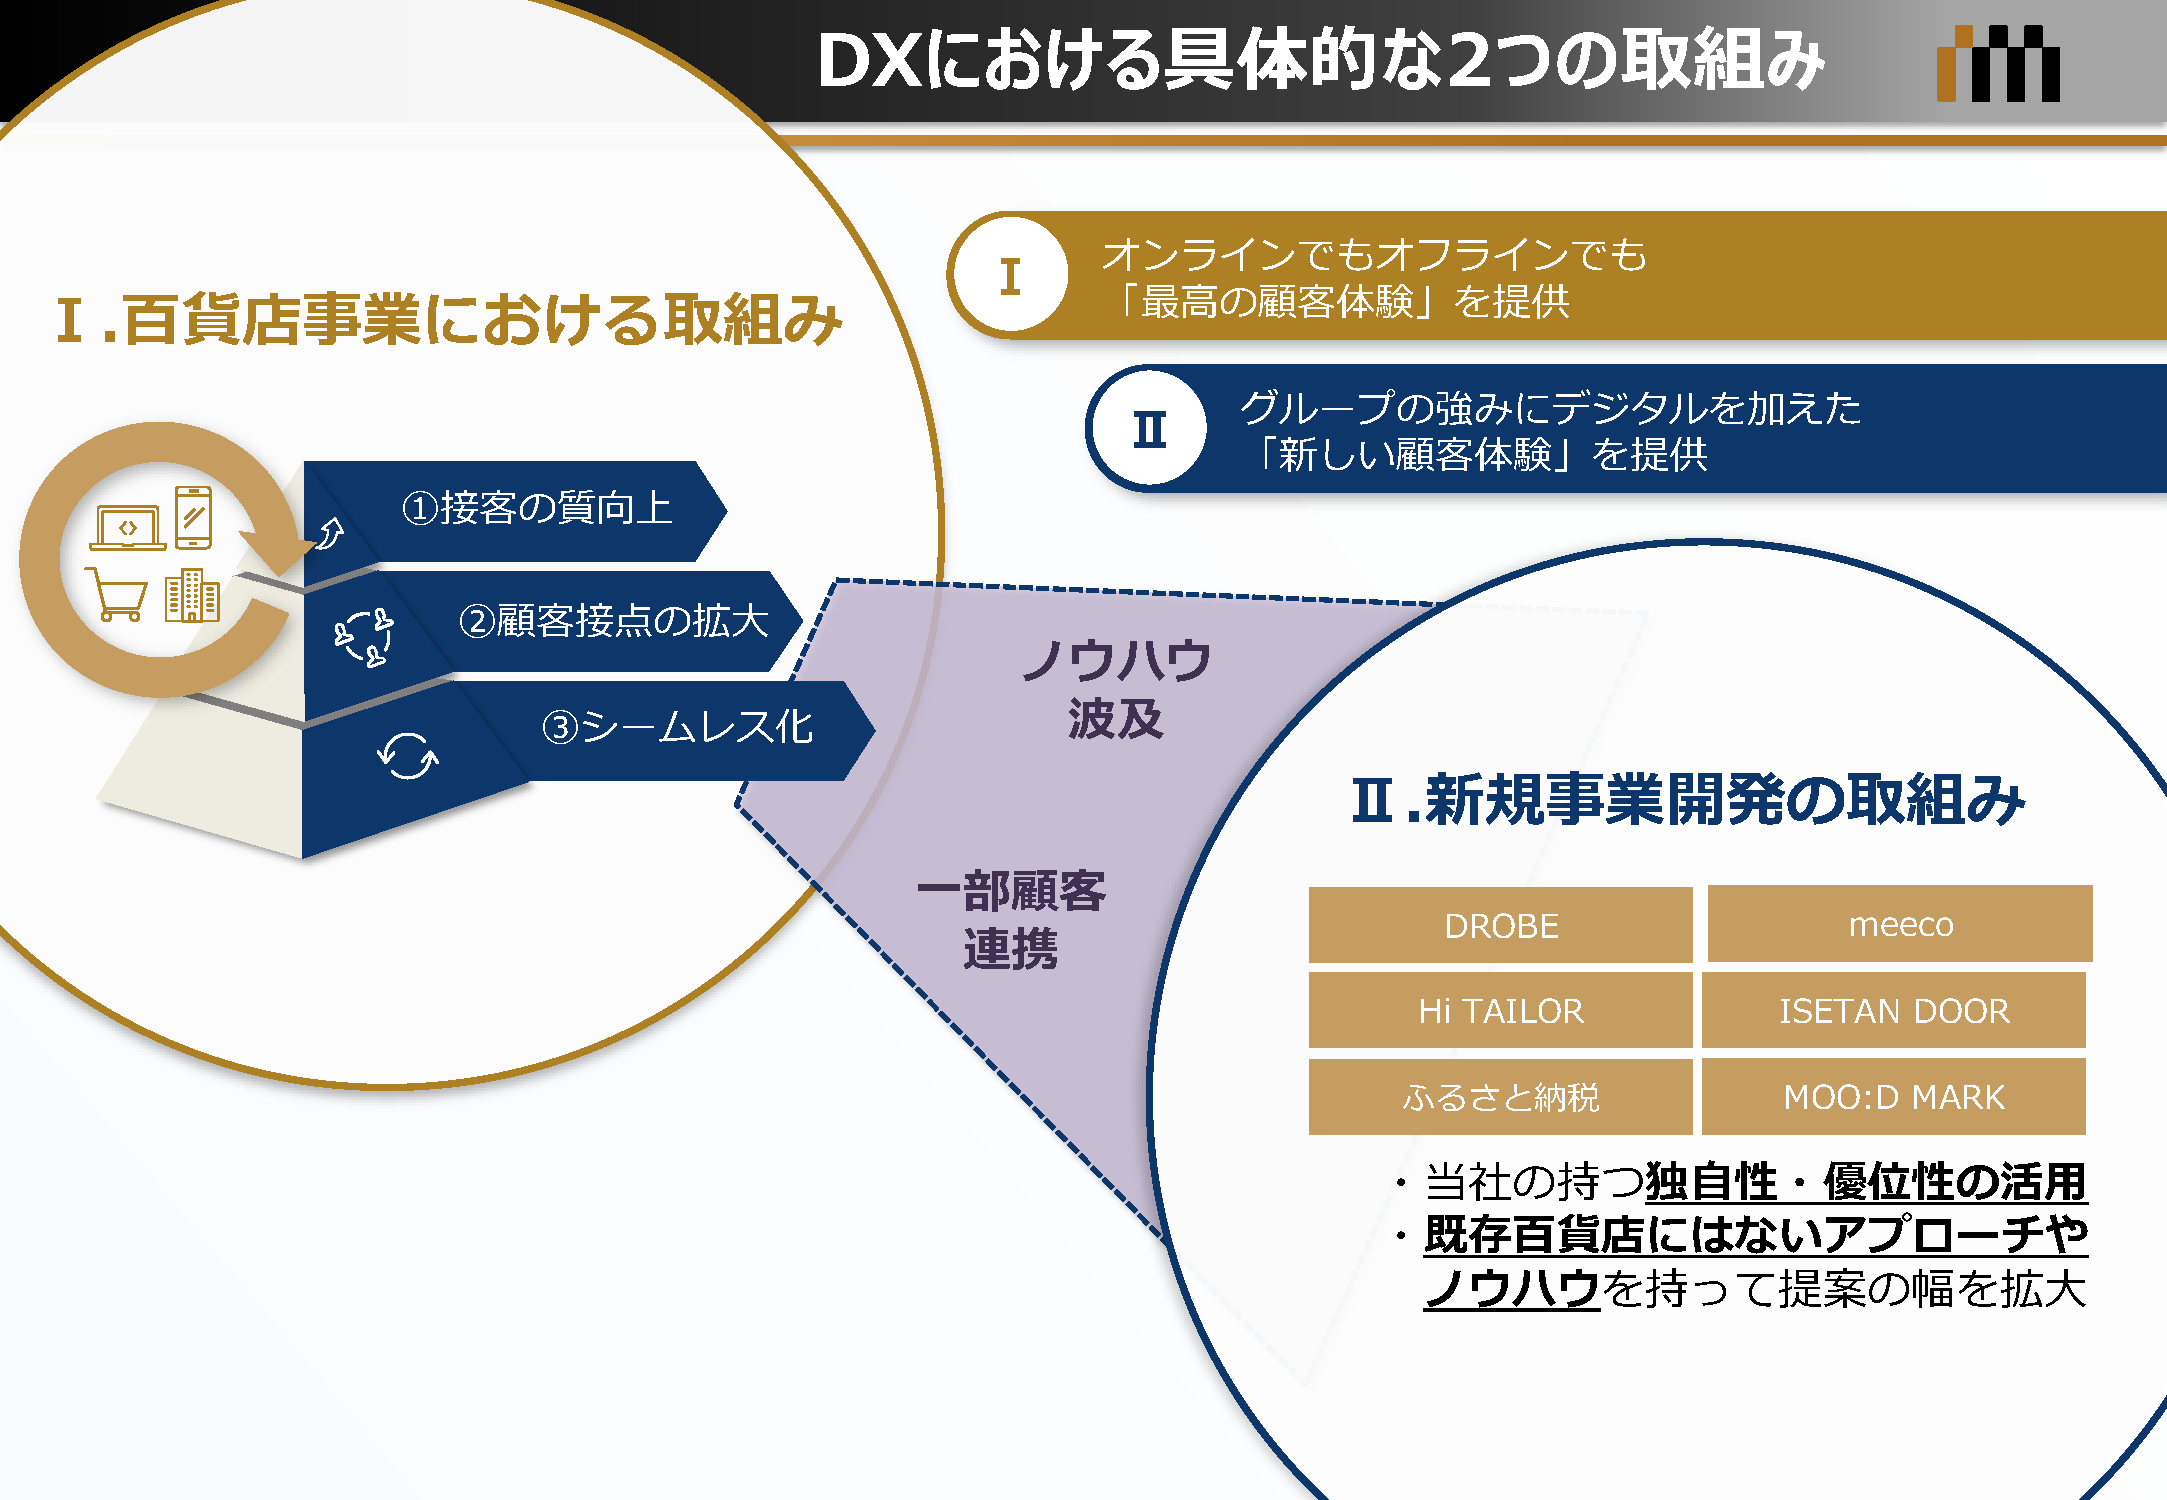 DXにおける具体的な2つの取組み